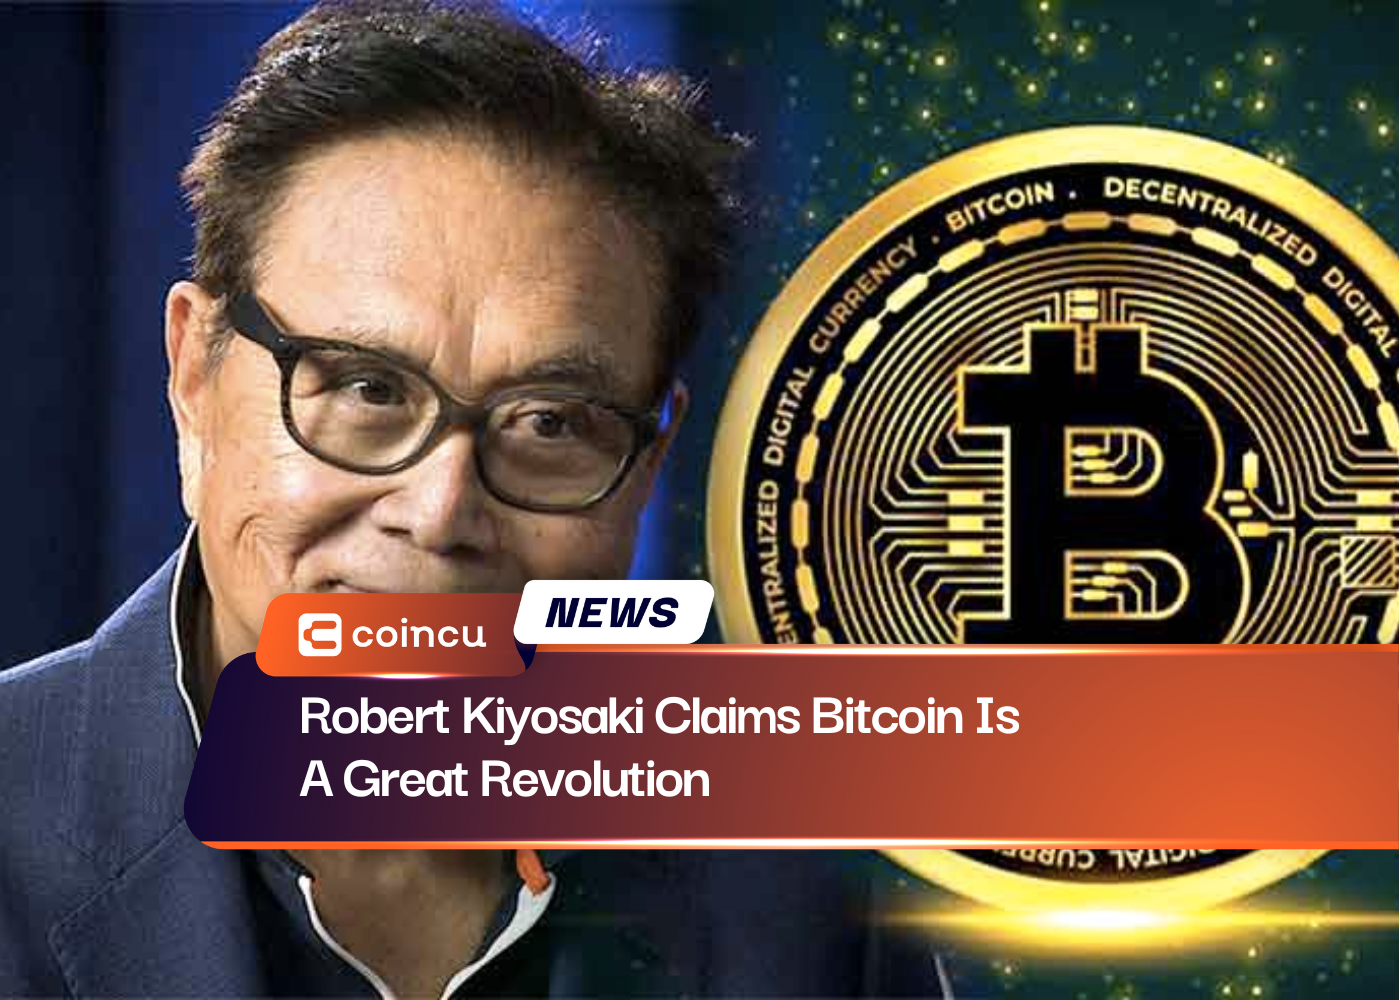 Robert Kiyosaki Claims Bitcoin Is A Great Revolution